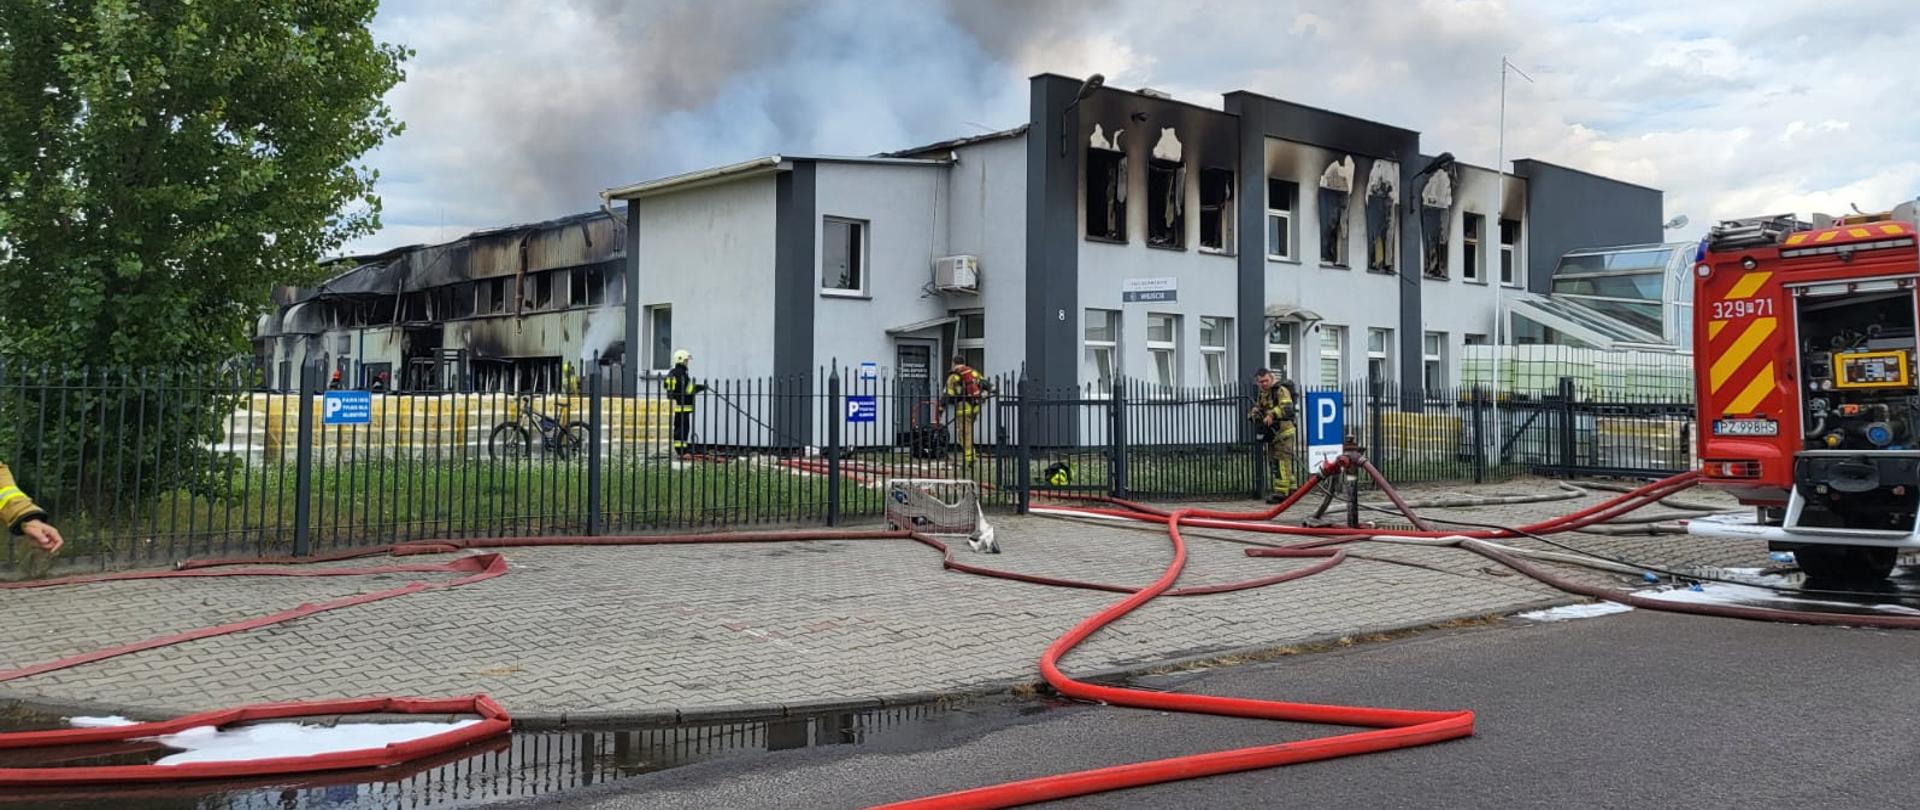 Pożar hali produkcyjno-magazynowej w Luboniu